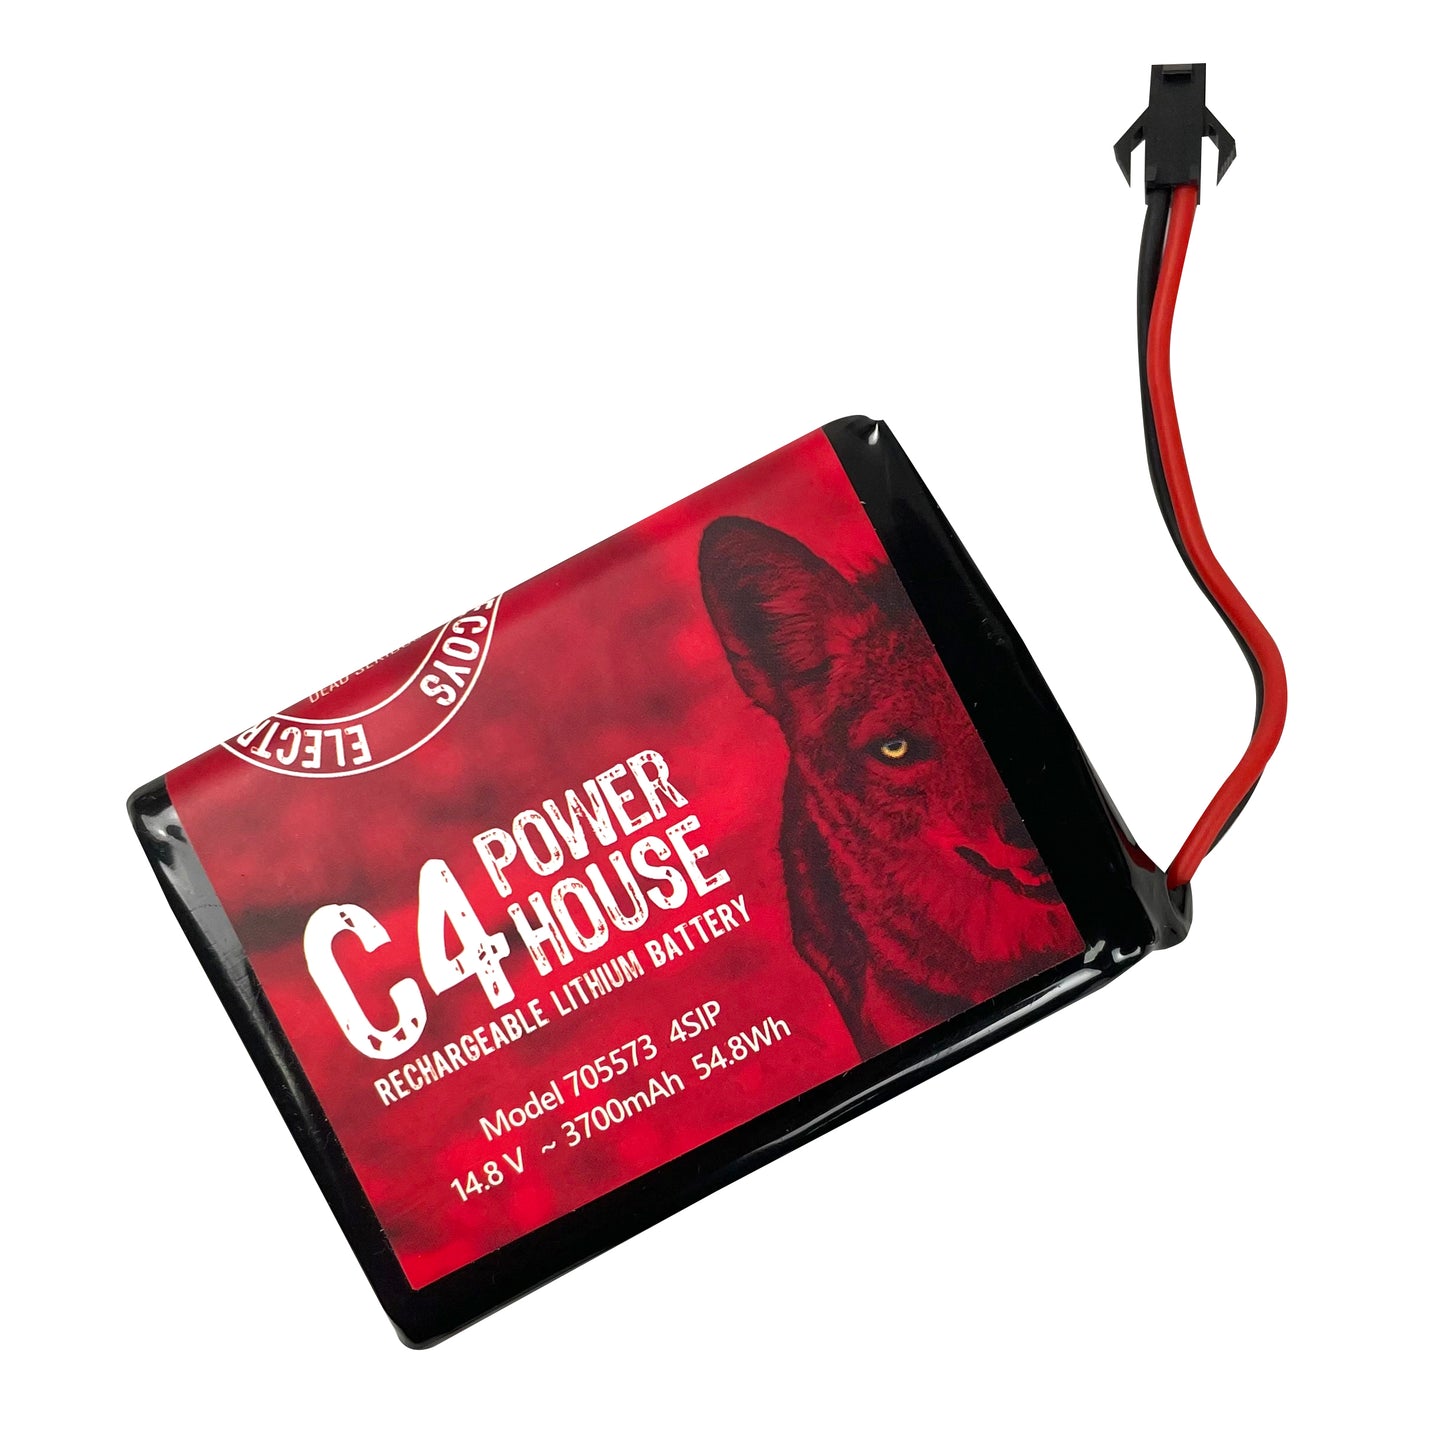 Batterie au lithium rechargeable C4 Power House